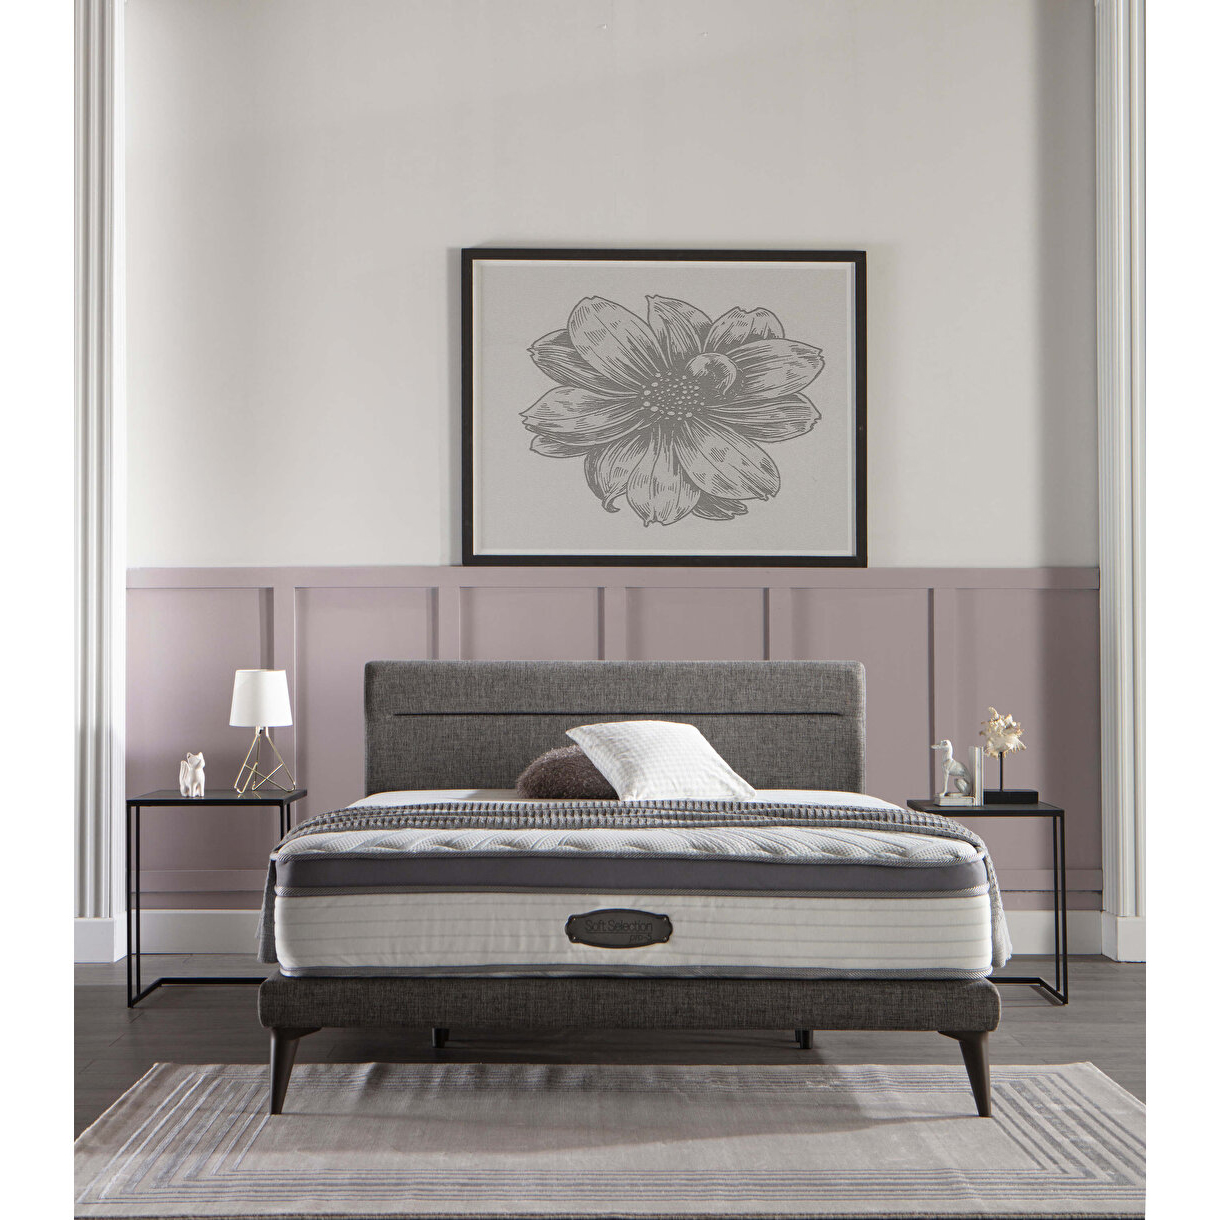 Кровать Bellona Flexy с мягким изголовьем, 180х200 см (FLEX-26-180)FLEX-26-180